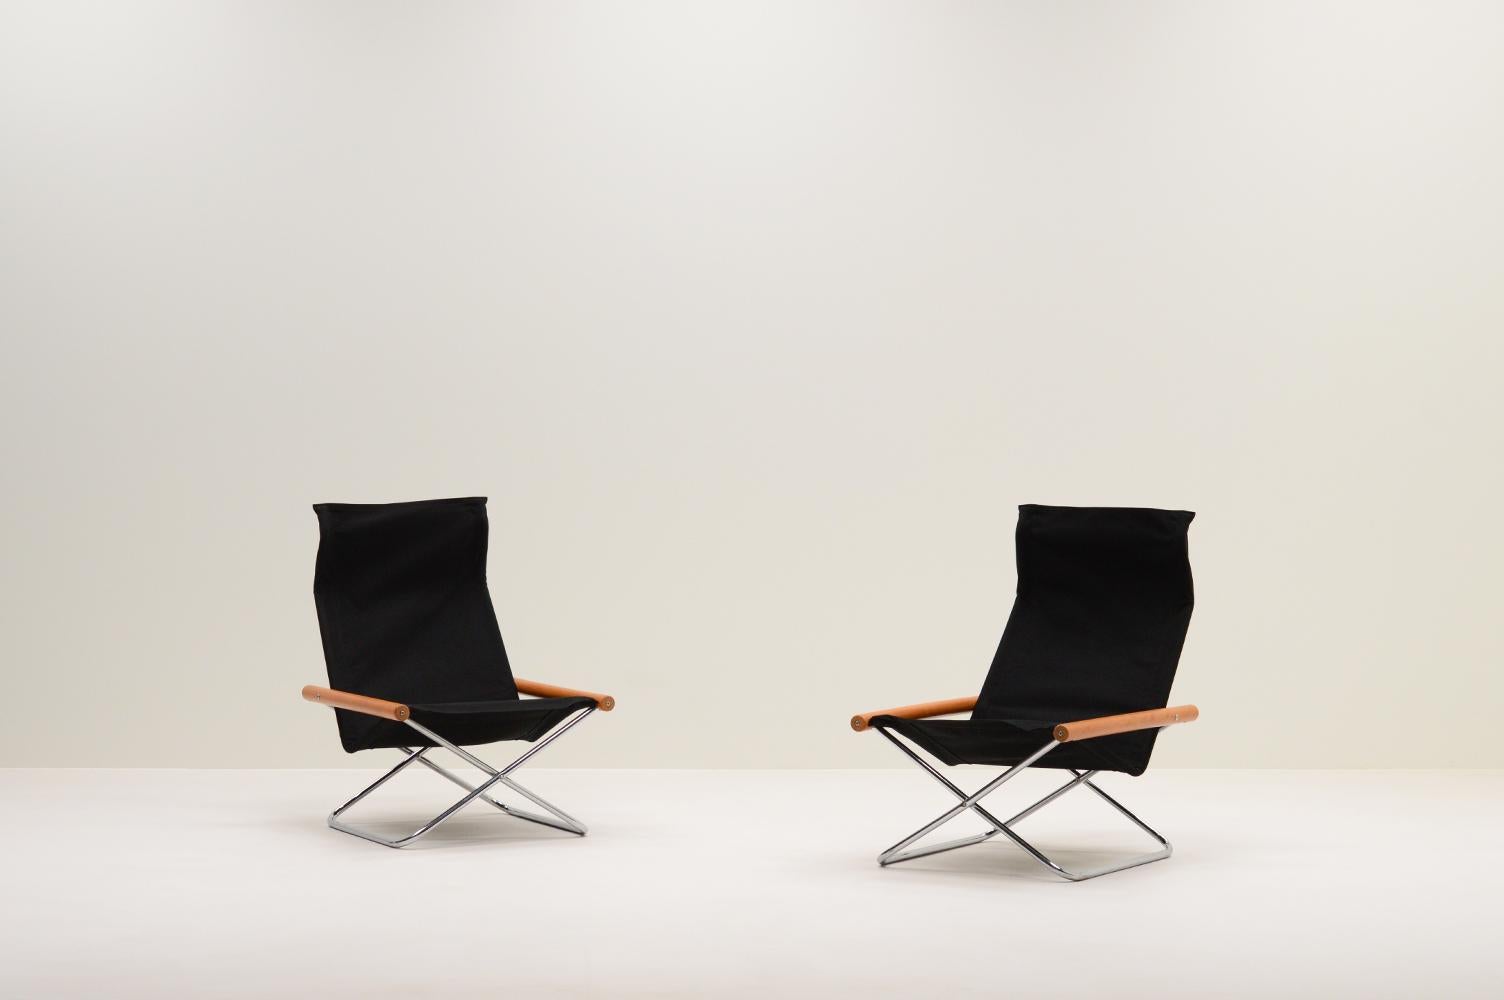 Ensemble de 2 chaises NY par Takeshi Nii, 1950s Japon. Chaises pliantes minimalistes avec une base en X chromée, des accoudoirs en bois de hêtre et une assise en toile noire retapissée.  La chaise a été baptisée MEAN, d'après le nom de famille du